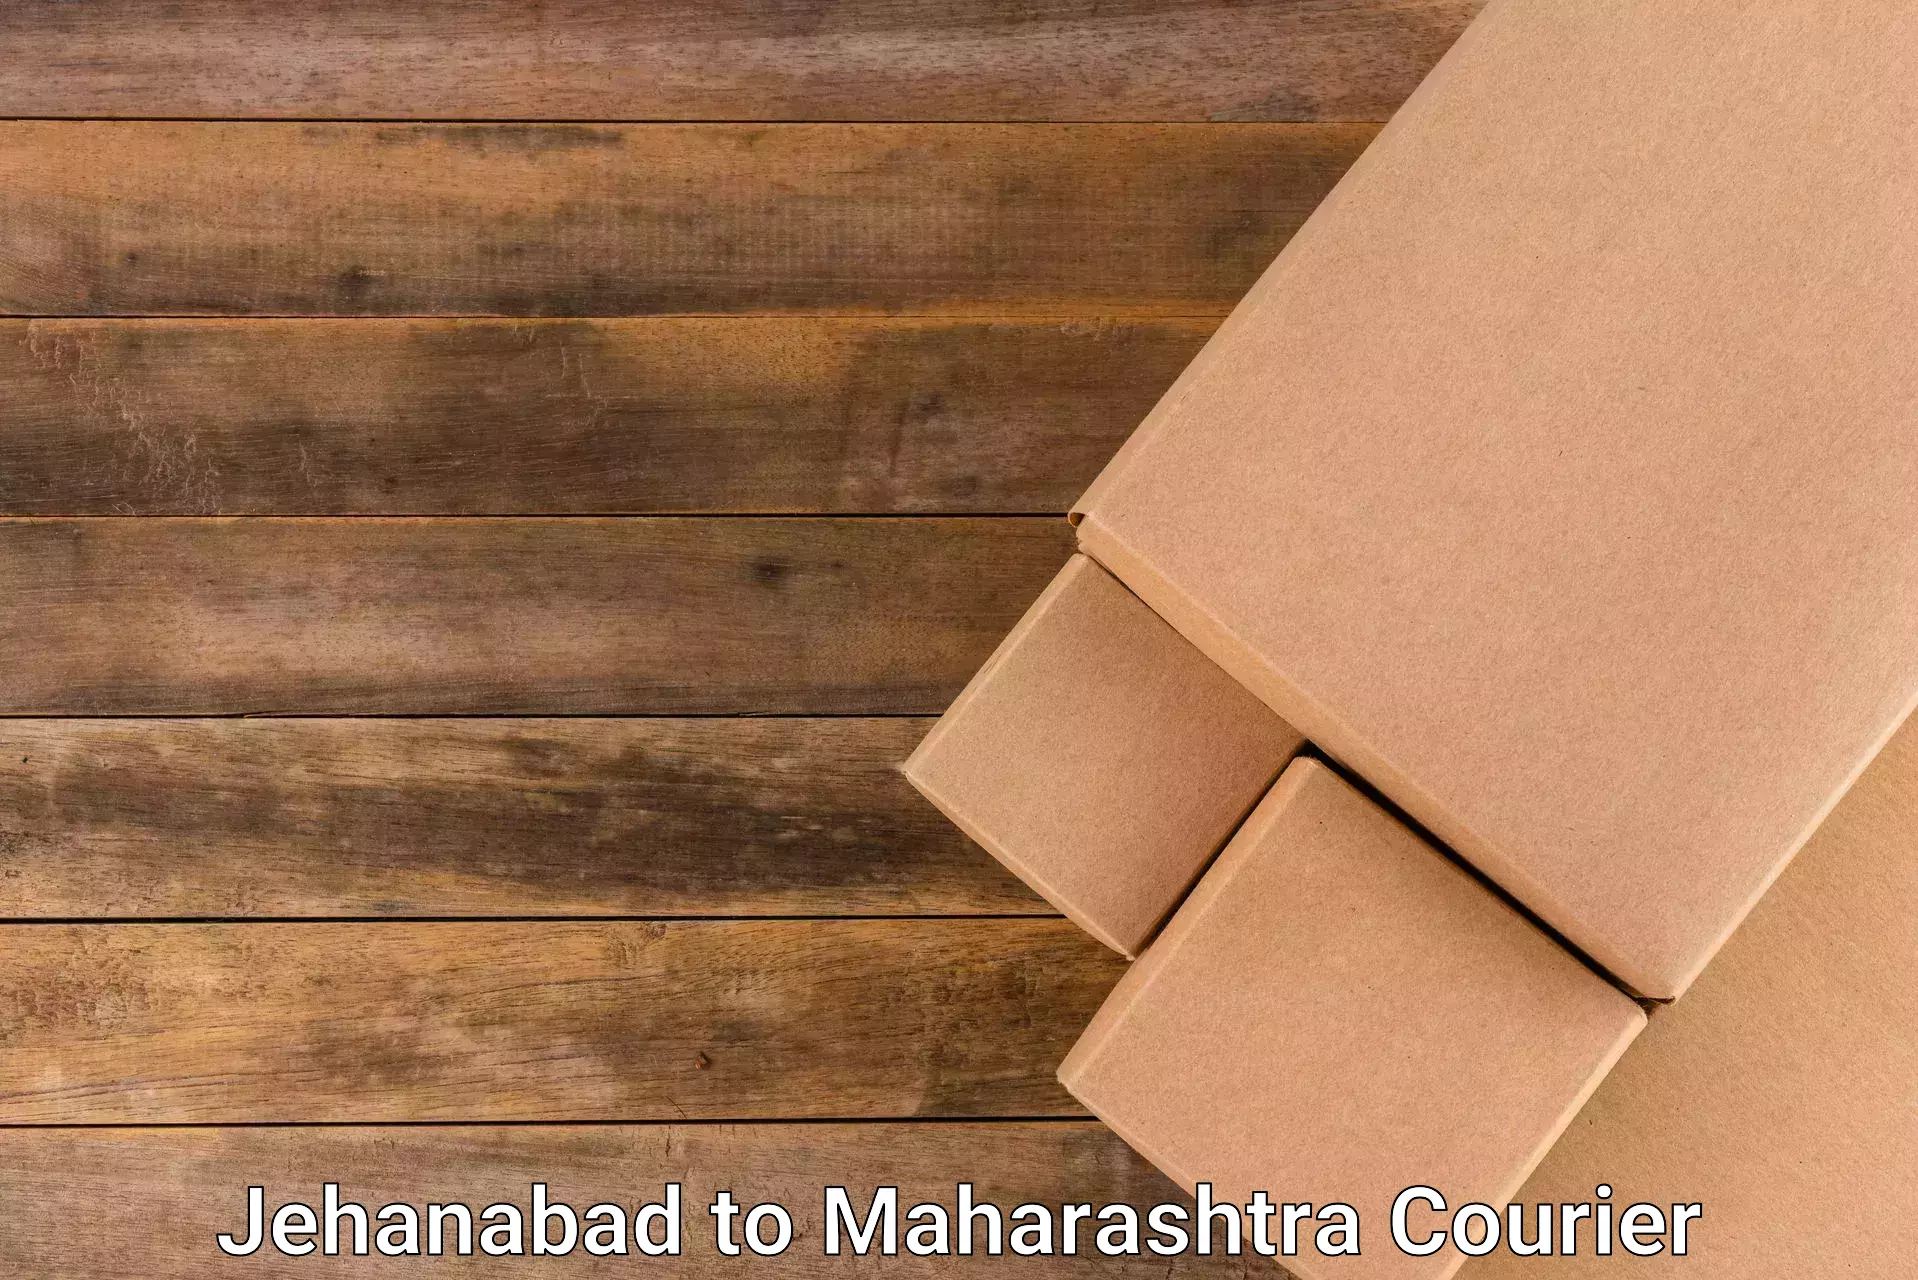 High-performance logistics Jehanabad to Maharashtra